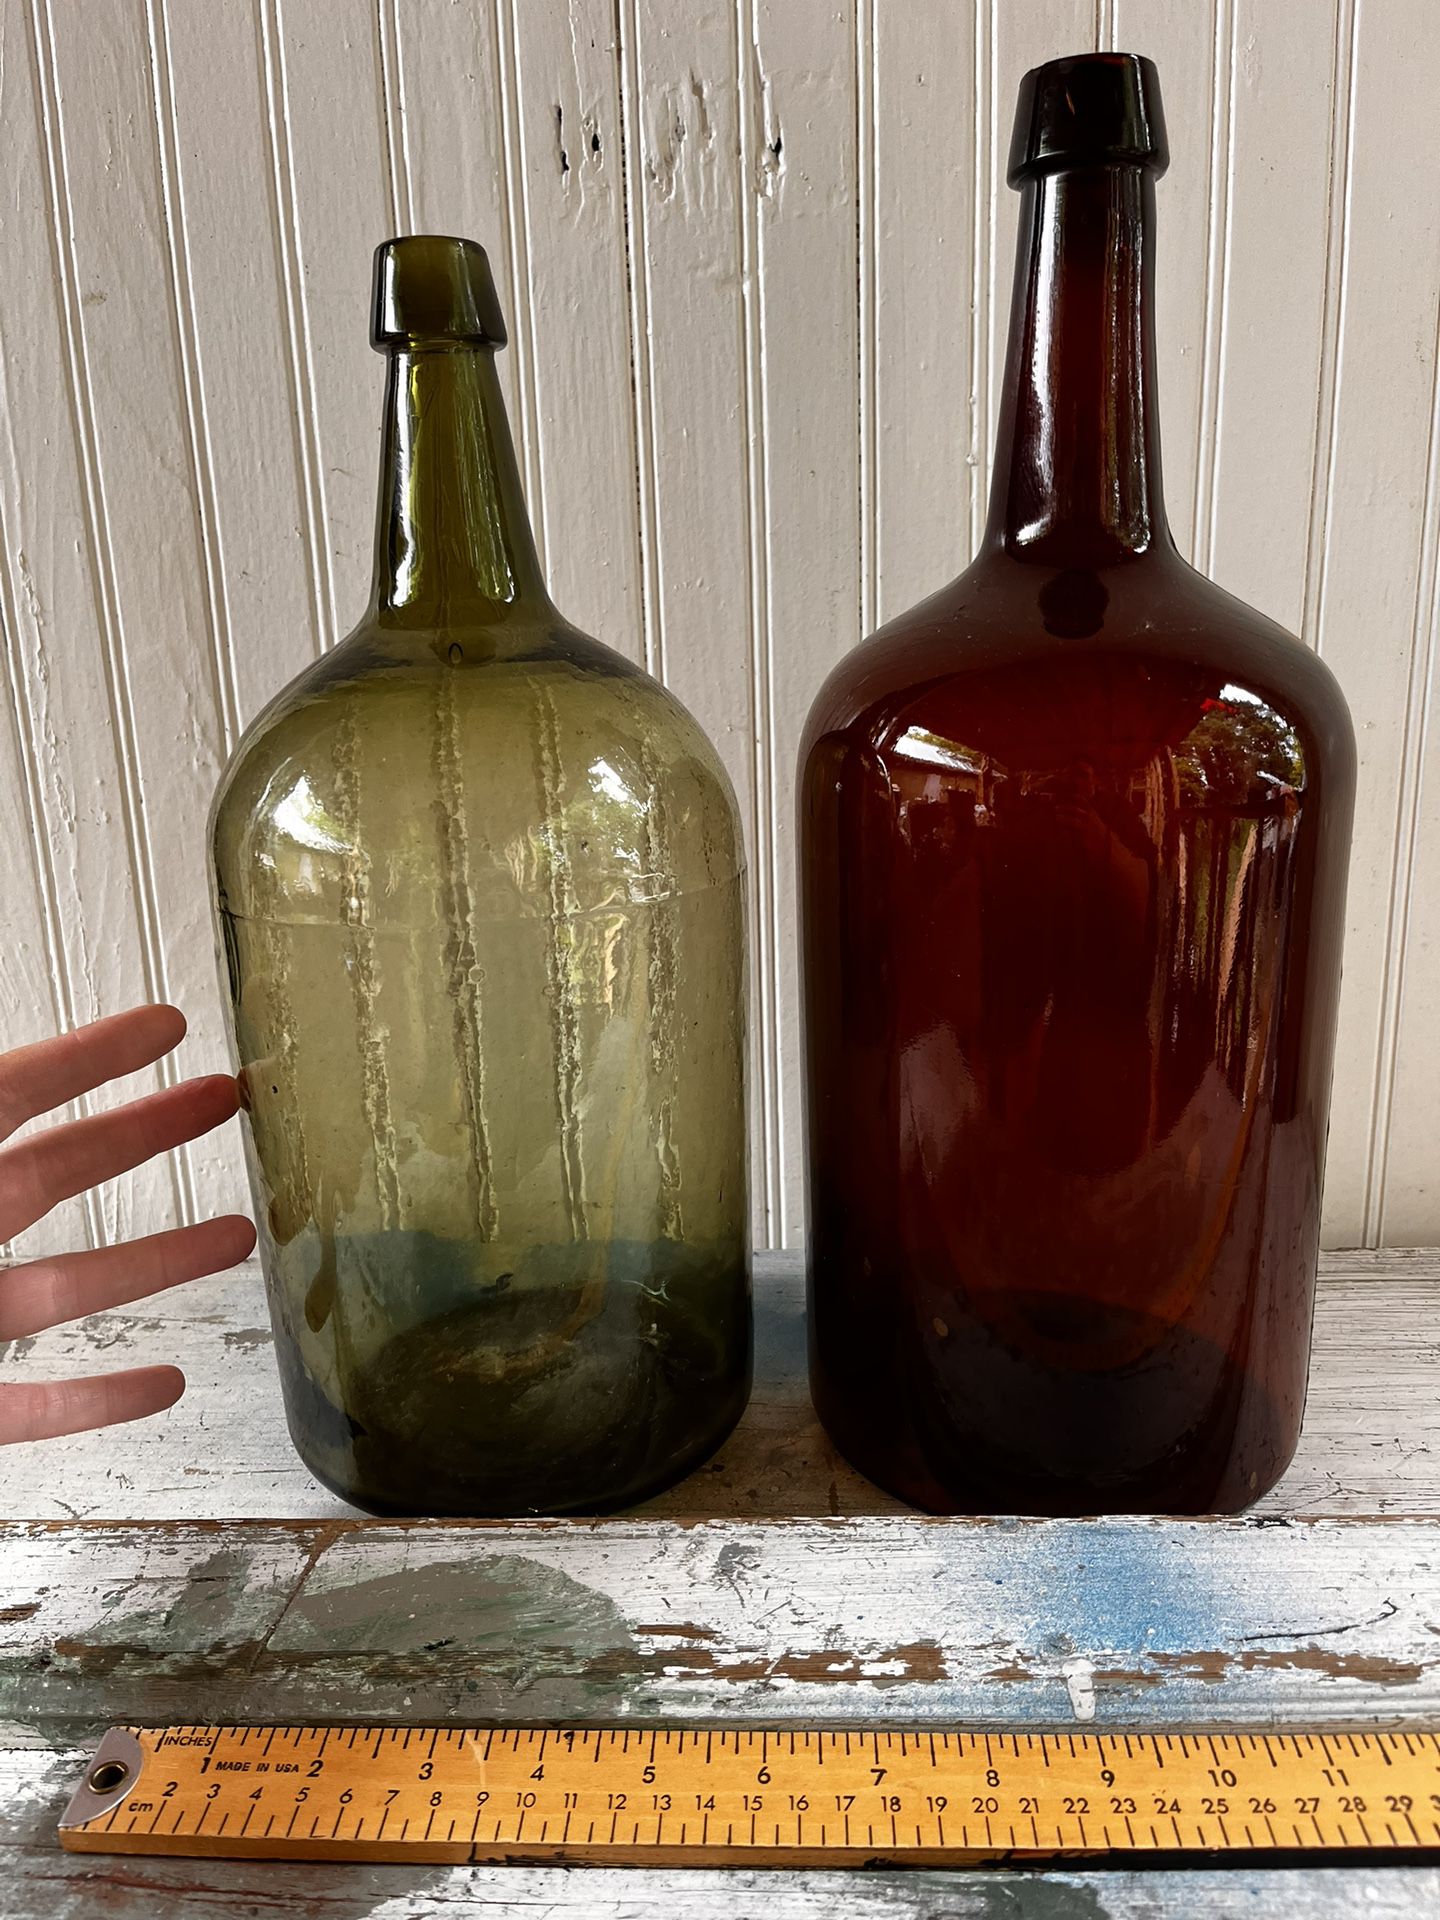 Oatworks releases bottles with splash of color, 2014-05-16